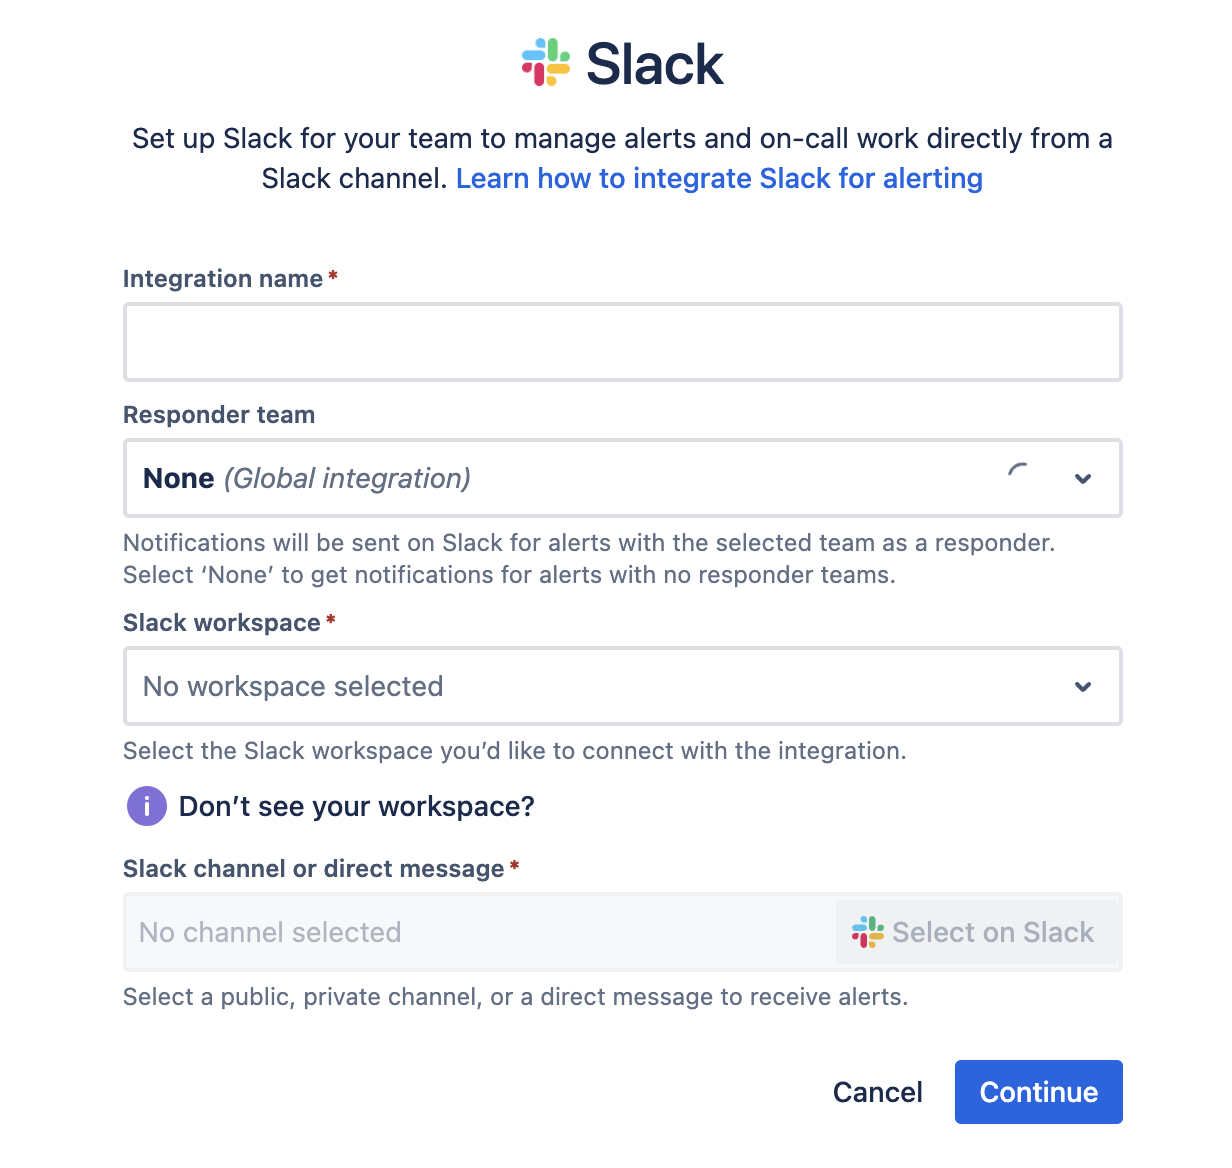 Campi del modulo per le integrazioni Slack